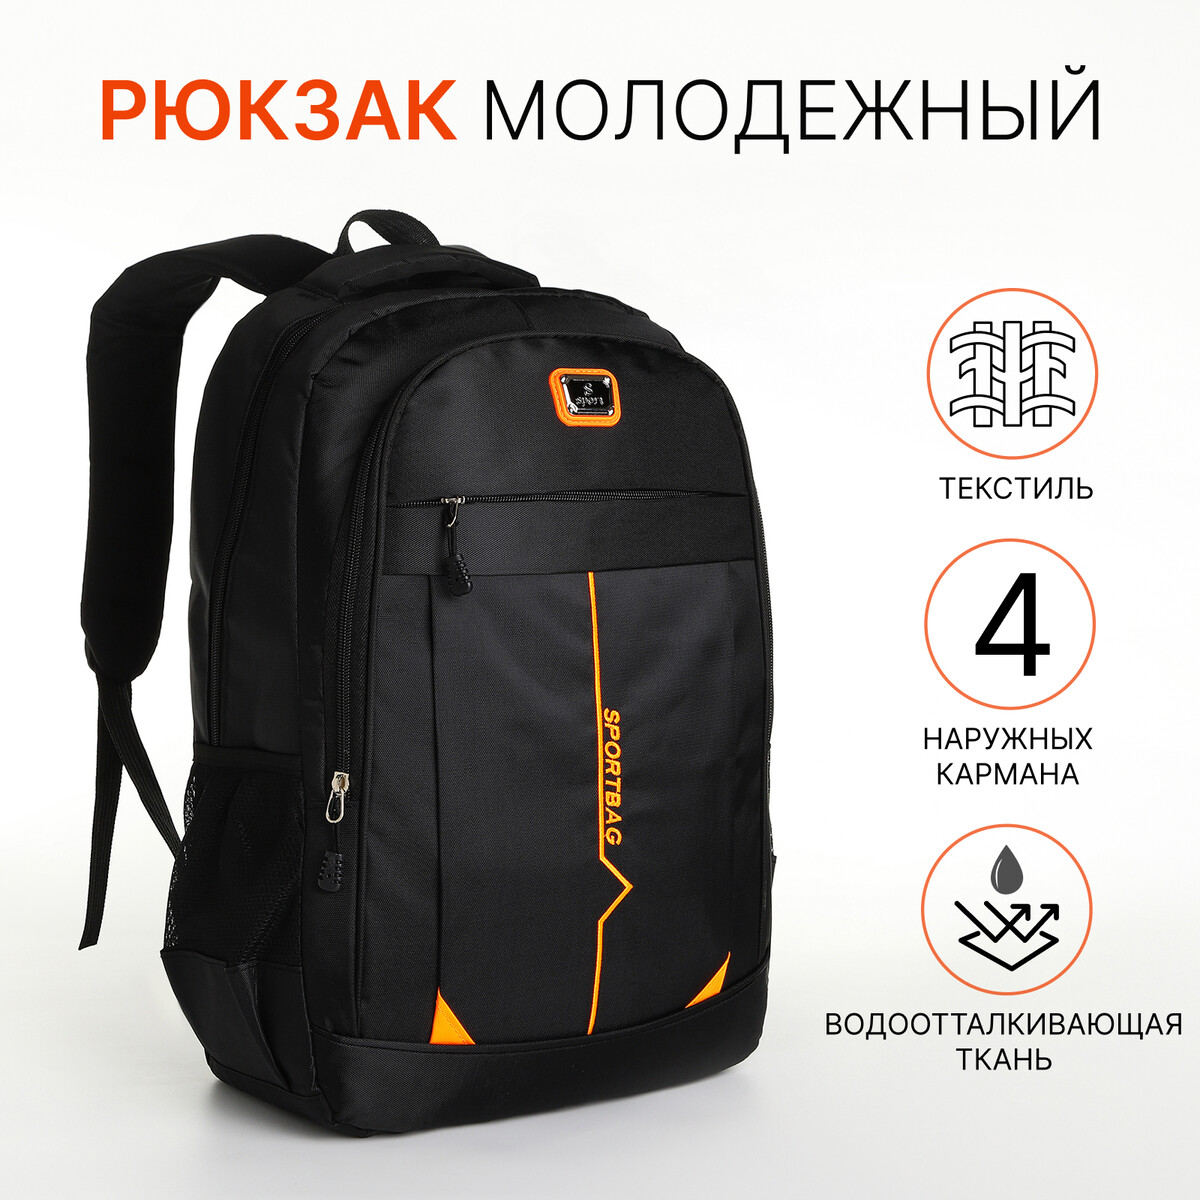 Рюкзак молодежный на молнии, 4 кармана, цвет черный/оранжевый рюкзак 31 45 15 см отд на молнии 4 н кармана оранжевый